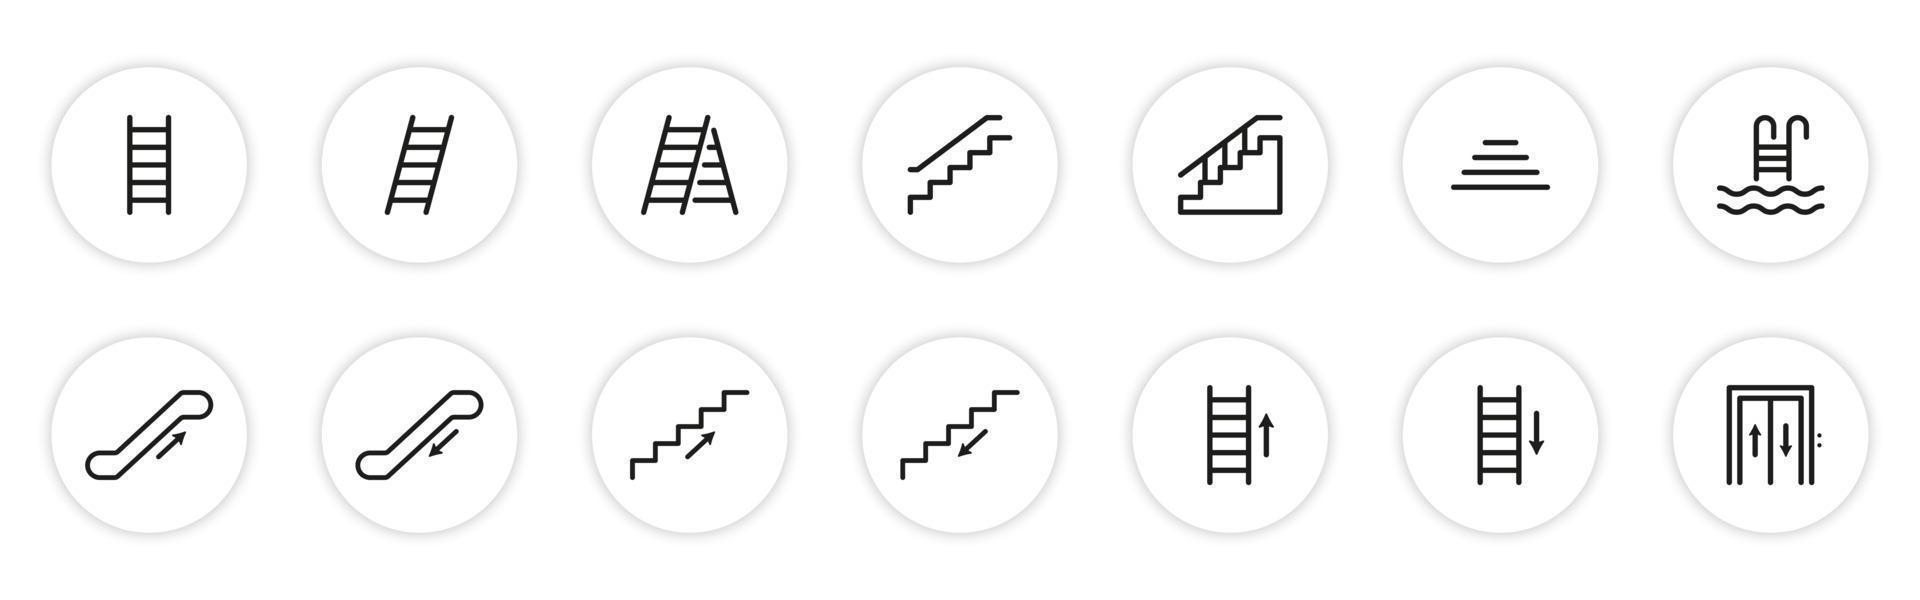 Reihe von Treppen Liniensymbol. Treppen lineares Piktogramm. auf Stufen hinaufsteigen oder hinuntergehen. Leiter, Aufzug, Treppe, Rolltreppe, Umrisssymbol für Pooltreppen. isolierte Vektorillustration. vektor